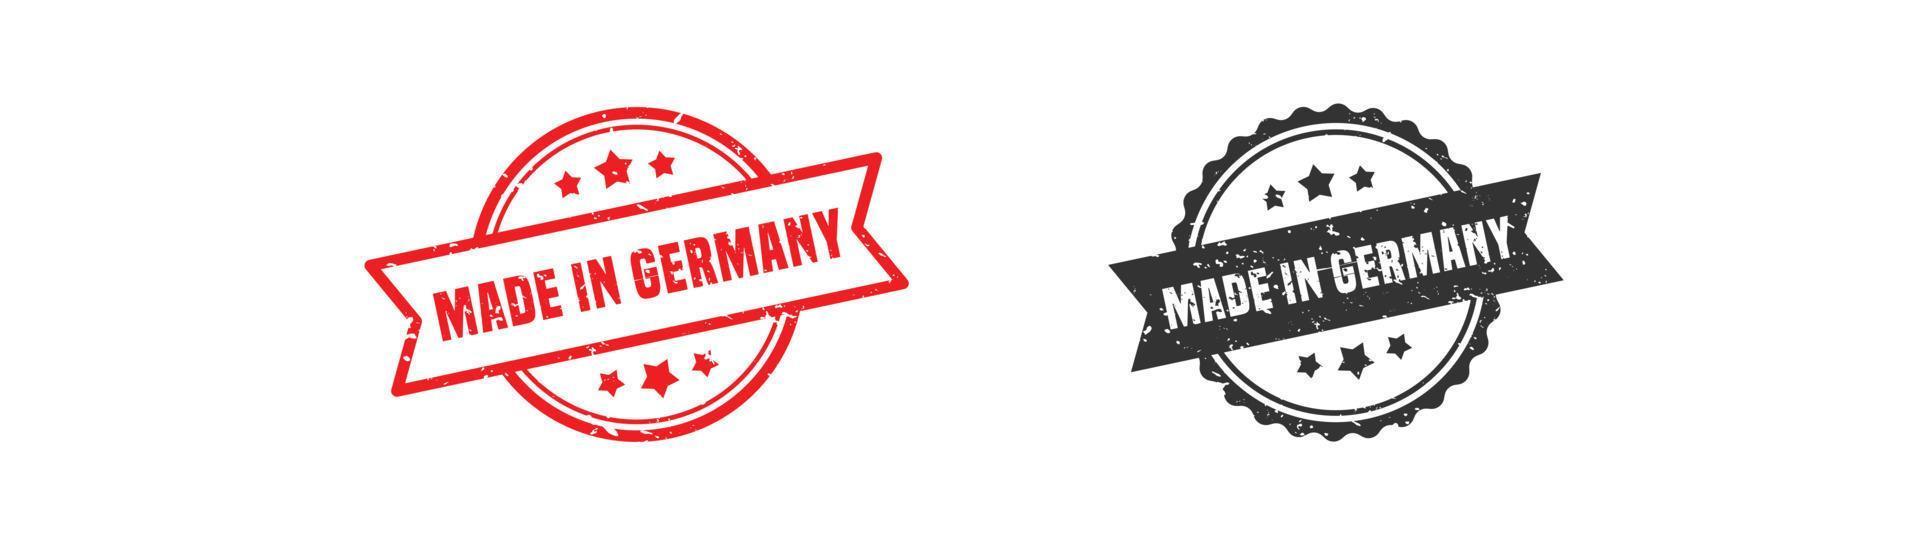 Hecho en goma de sello de Alemania con estilo grunge sobre fondo blanco. vector